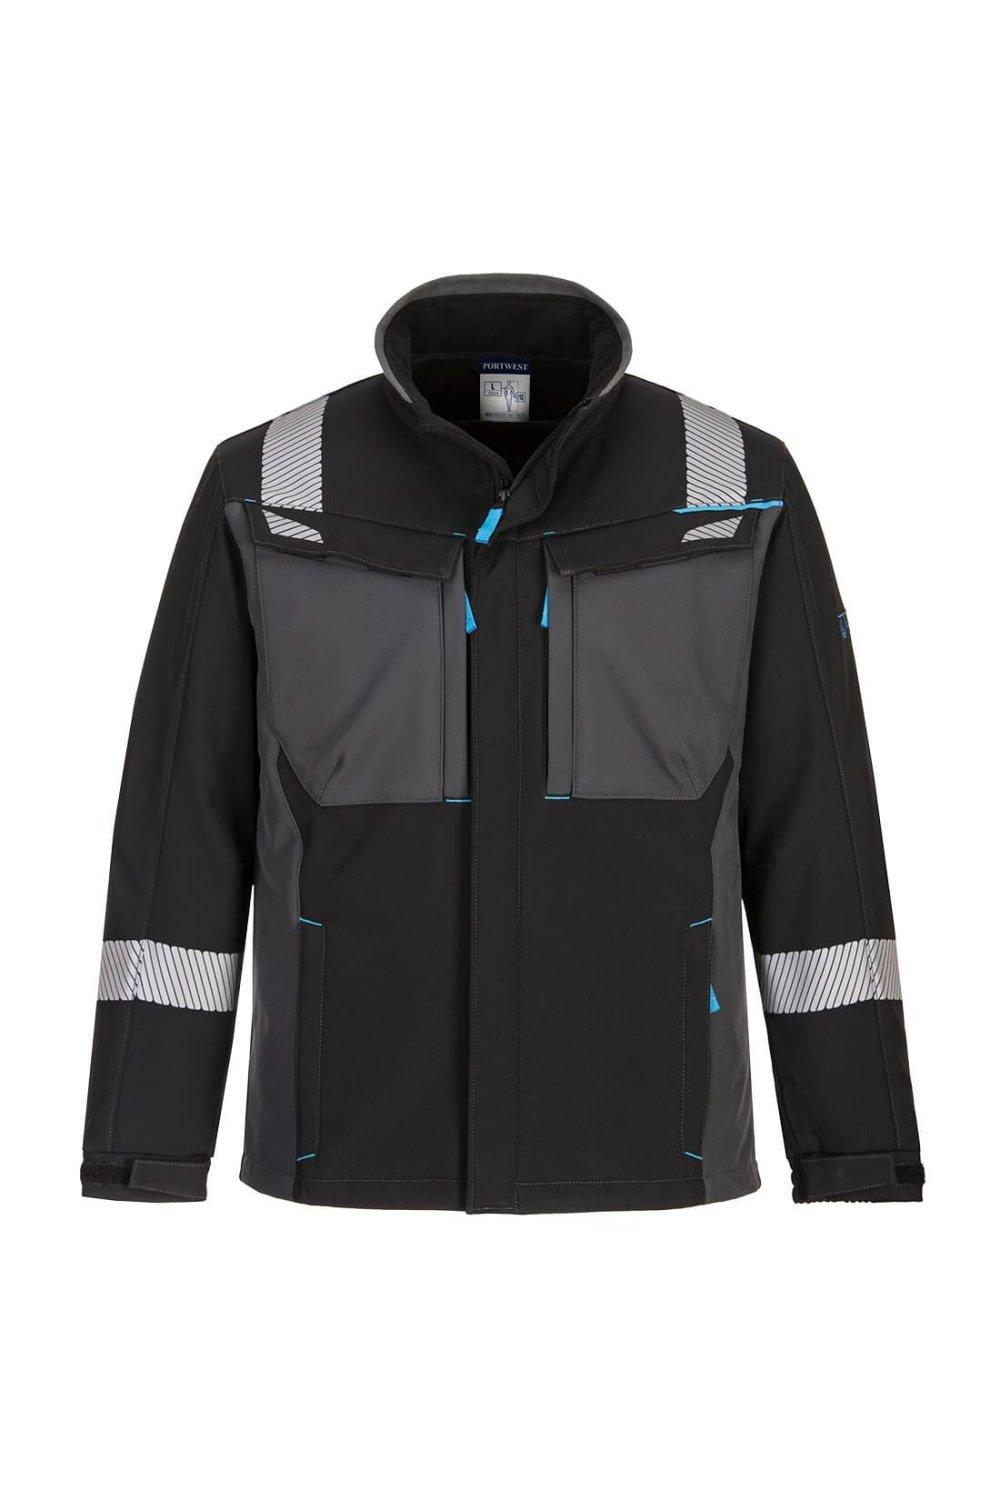 WX3 Огнестойкая куртка Soft Shell Portwest, черный